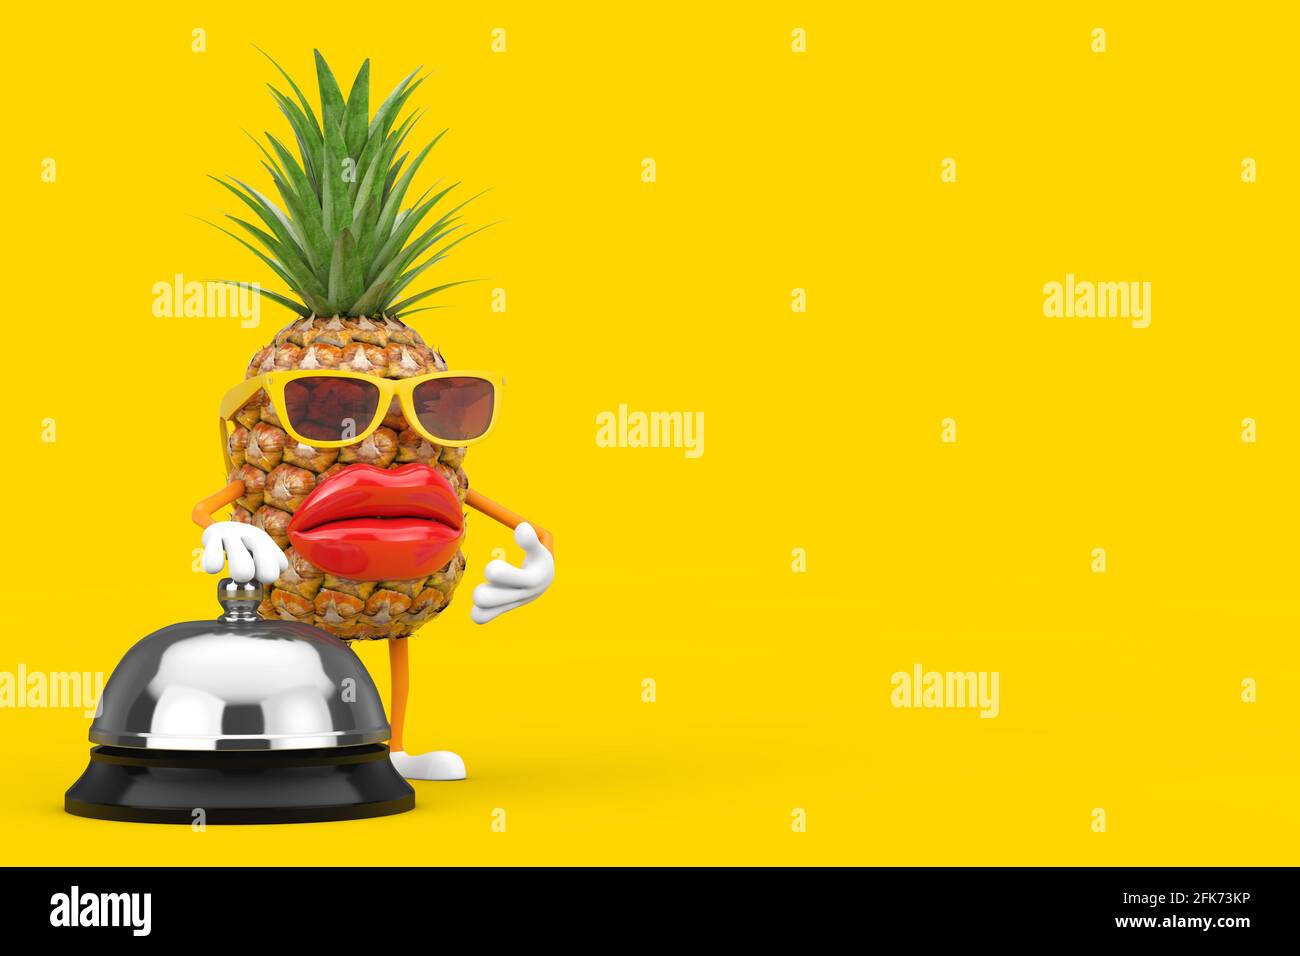 Fun Cartoon Fashion Hipster Schnitt Ananas Person Figur Maskottchen mit Hotel Service Bell Call auf einem gelben Hintergrund. 3d-Rendering Stockfoto